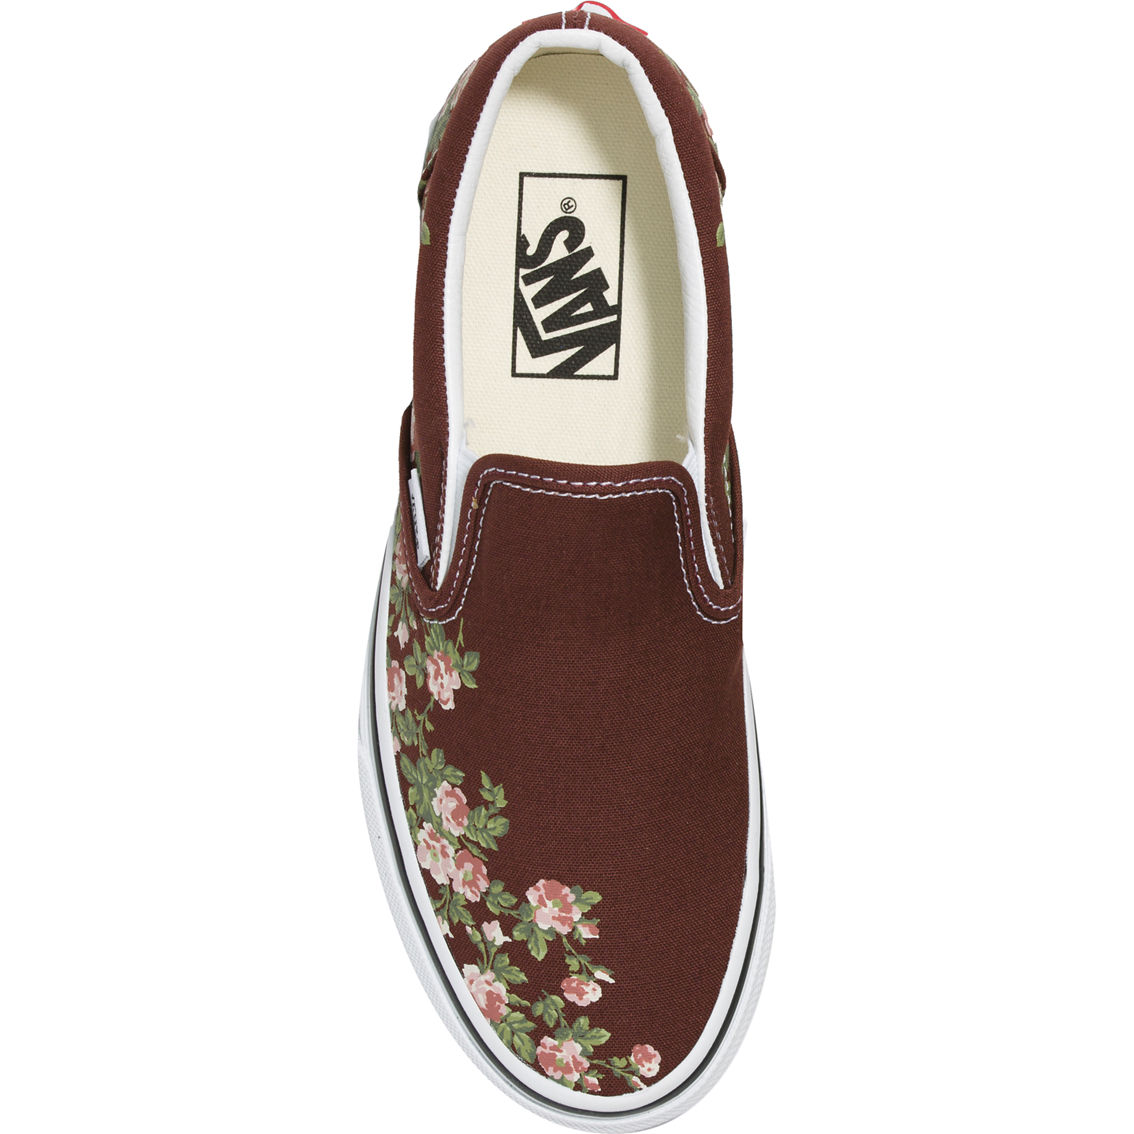 Vans Classic Slip On Wallflower Shoes - Image 3 of 4